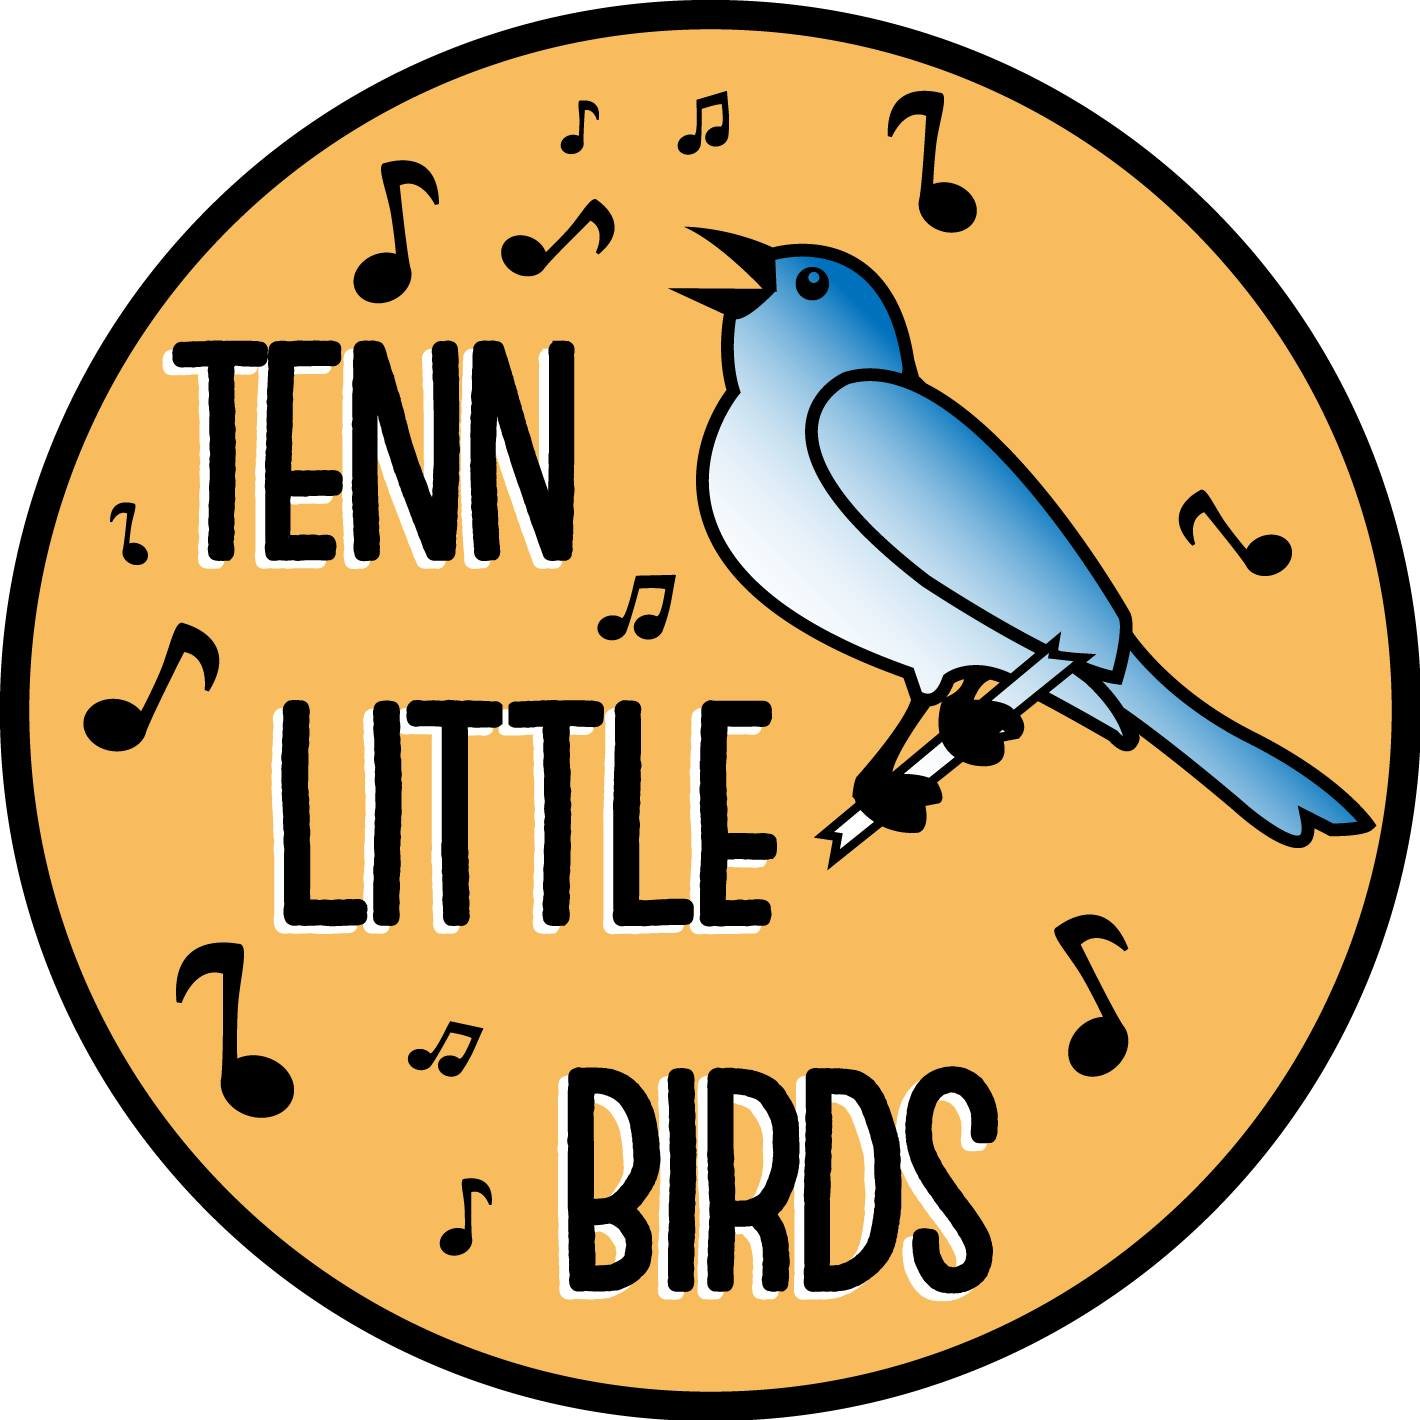 Tenn Little Birds